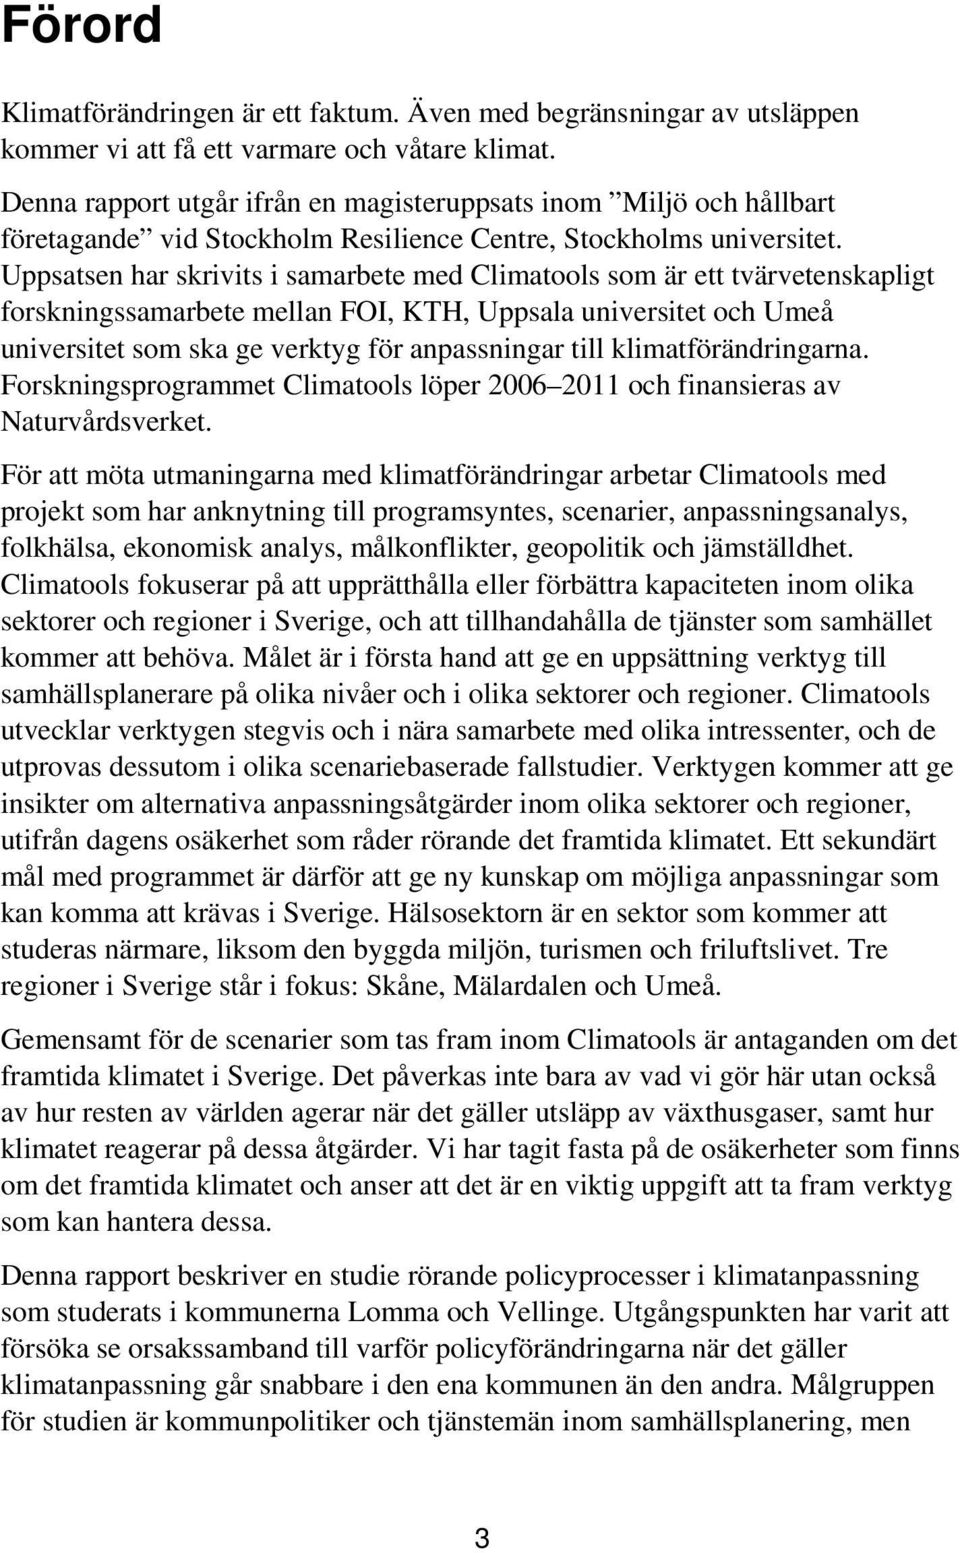 Uppsatsen har skrivits i samarbete med Climatools som är ett tvärvetenskapligt forskningssamarbete mellan FOI, KTH, Uppsala universitet och Umeå universitet som ska ge verktyg för anpassningar till